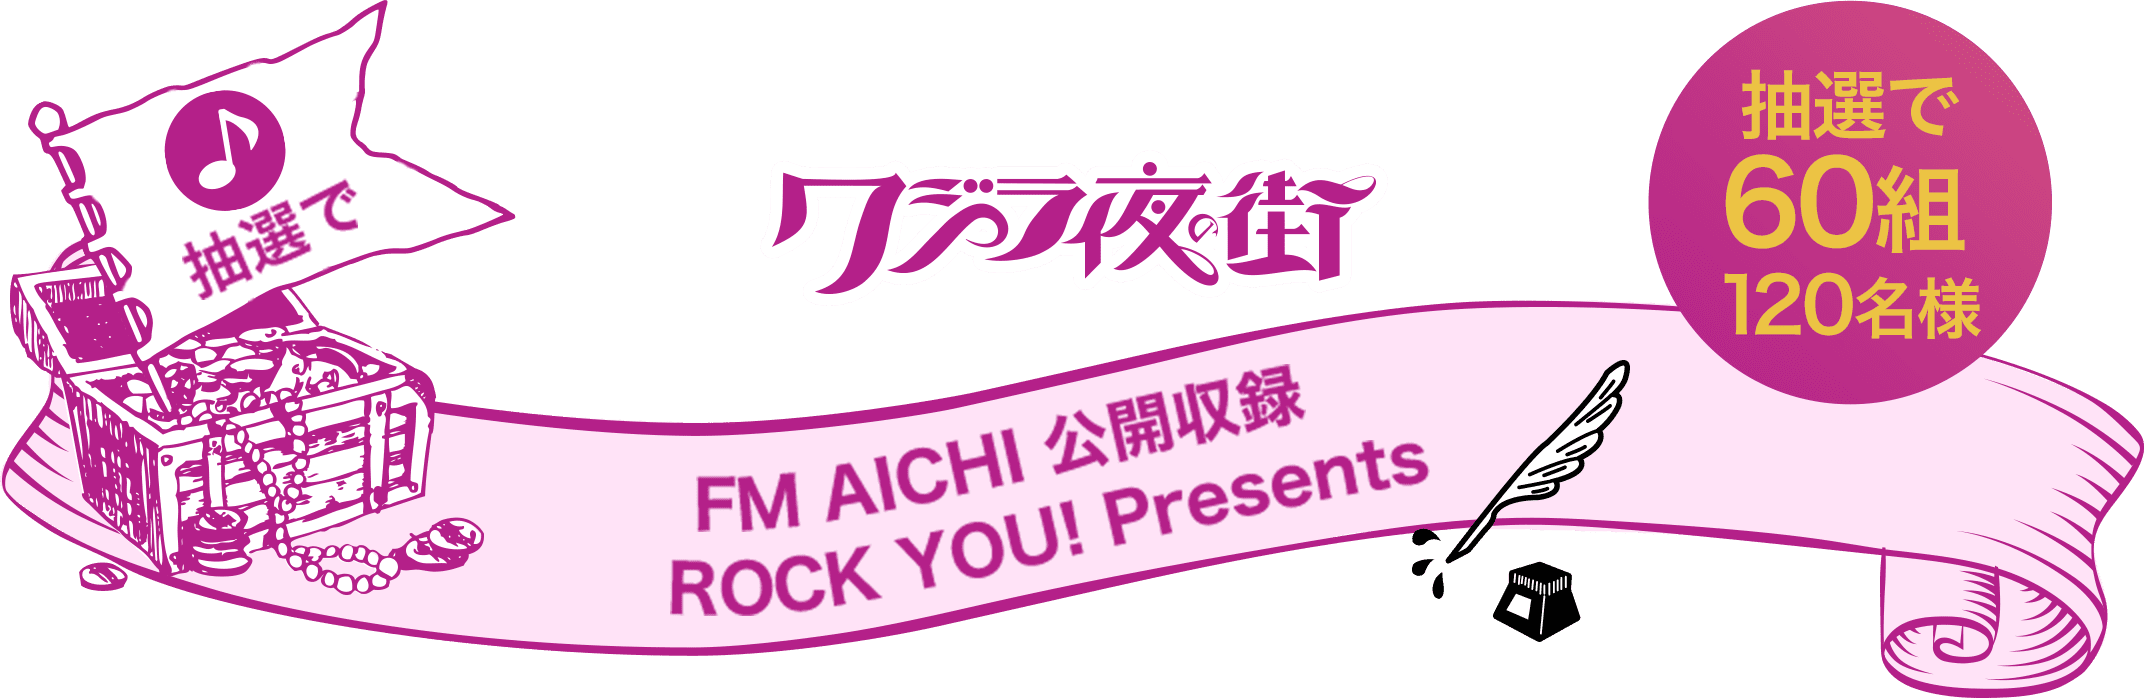 クジラ夜の街 FM AICHI 公開収録 ROCK YOU! Presents